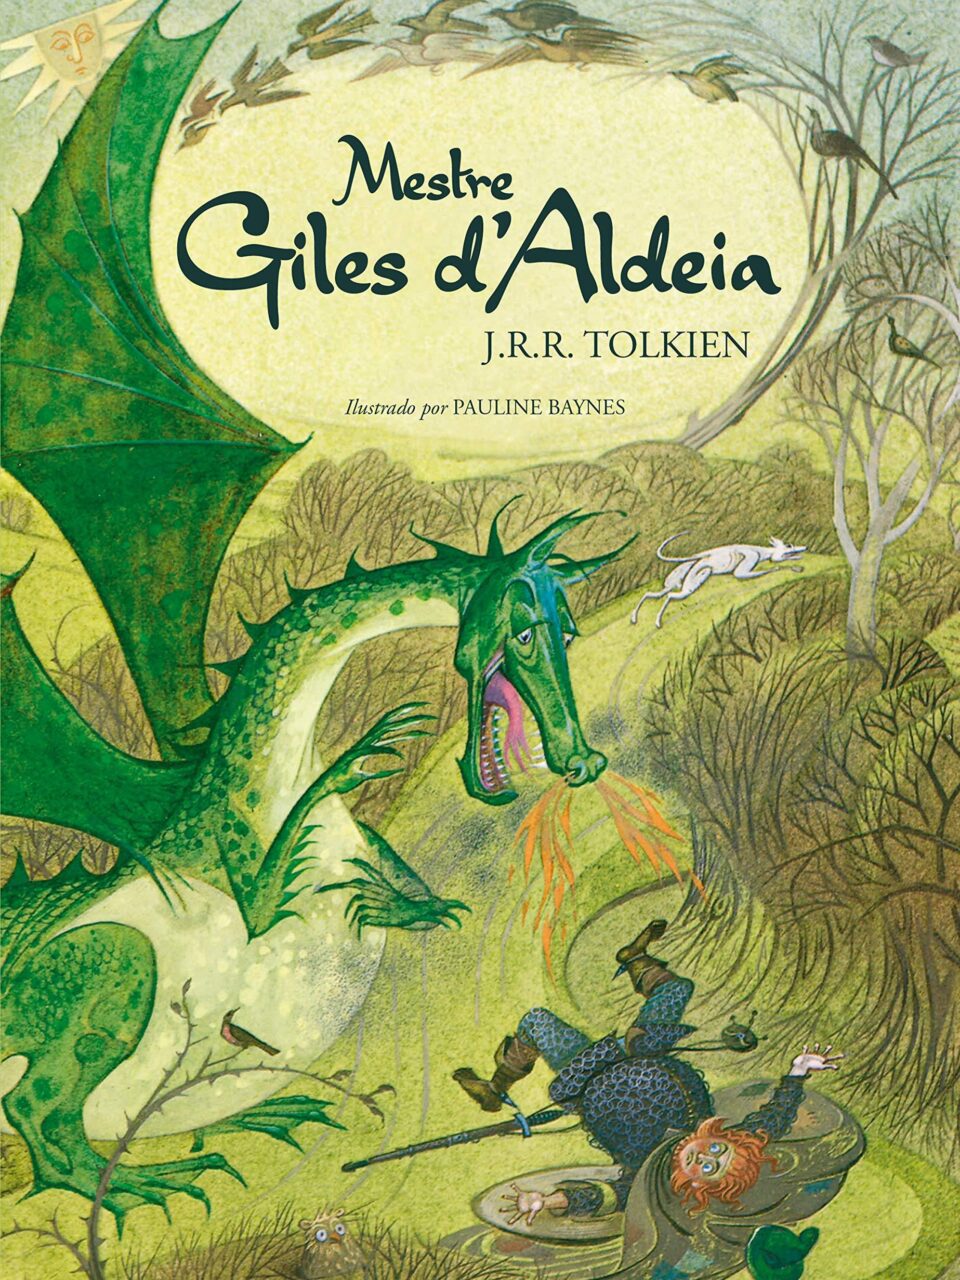 Mestre Giles d’Aldeia – J. R. R. Tolkien